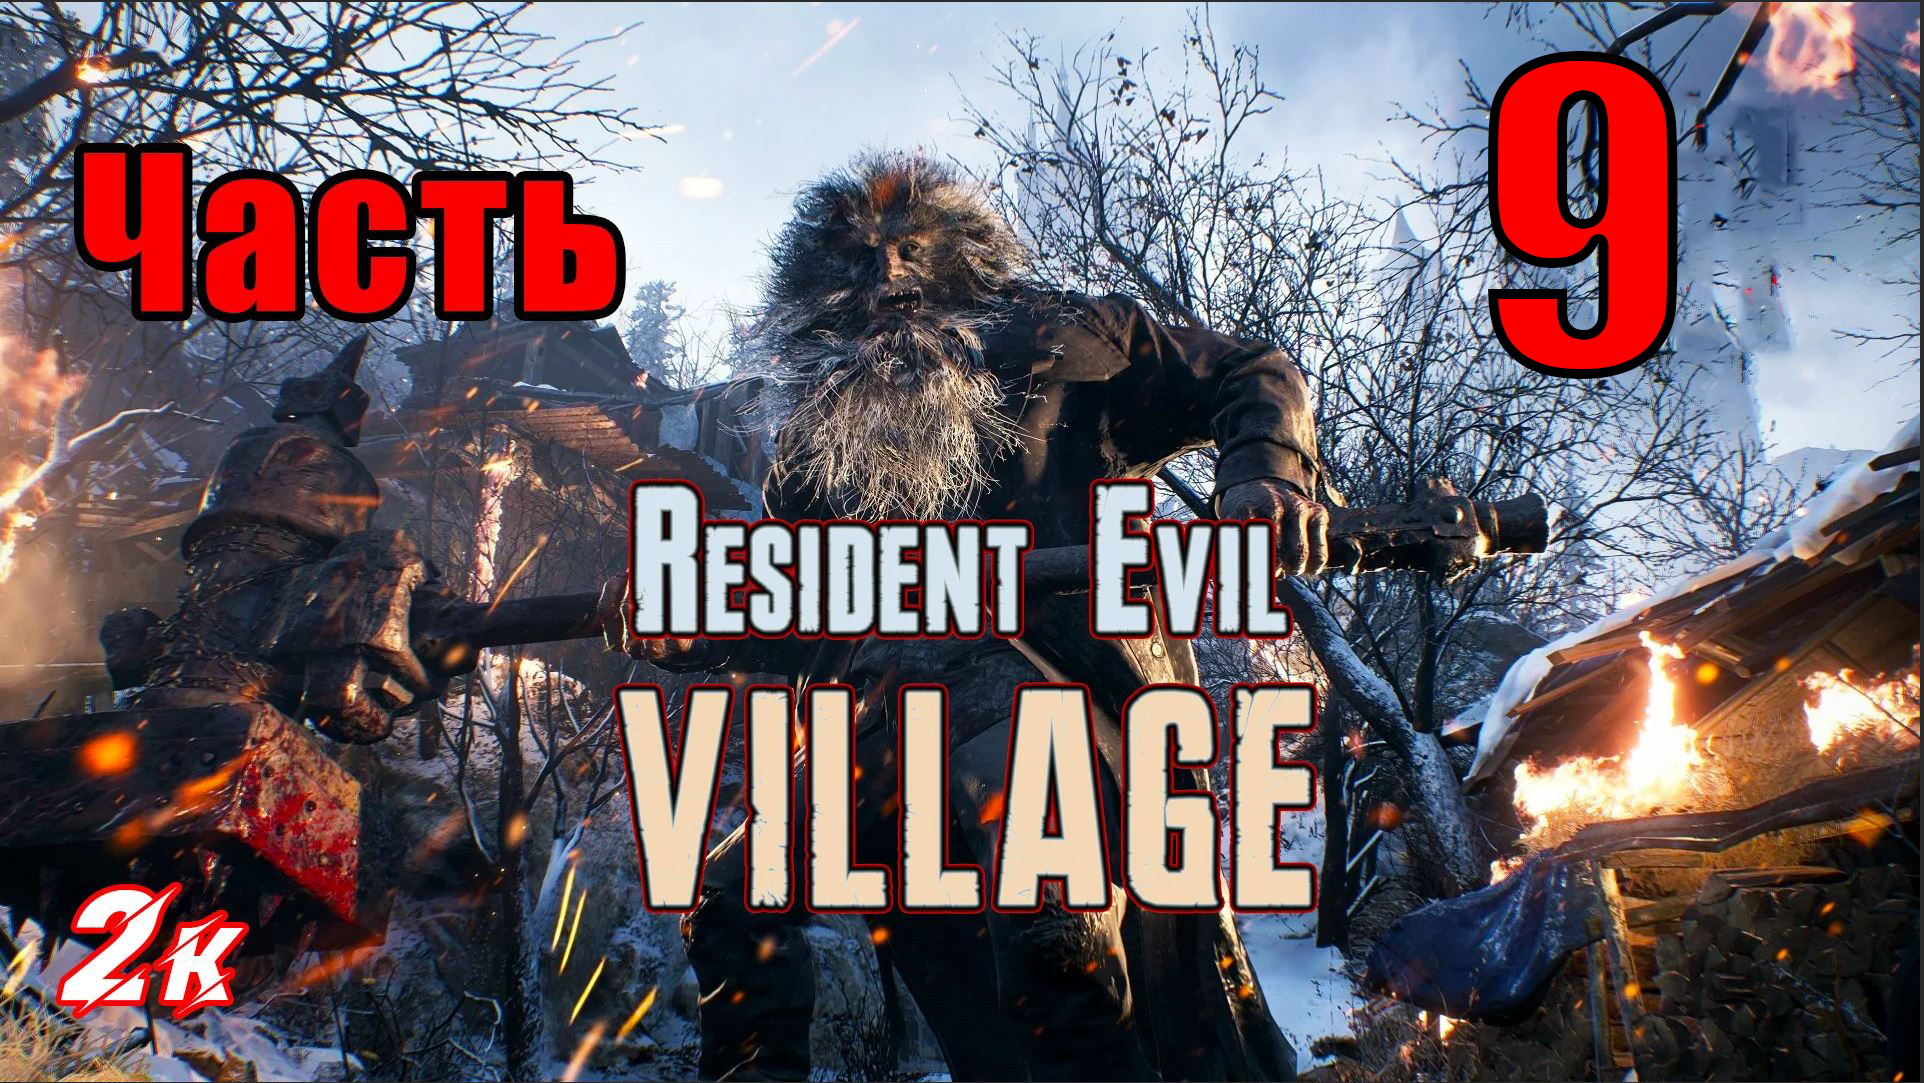 Resident Evil Village - на ПК ➤ Крепость ➤ Прохождение # 9 ➤ 2K ➤